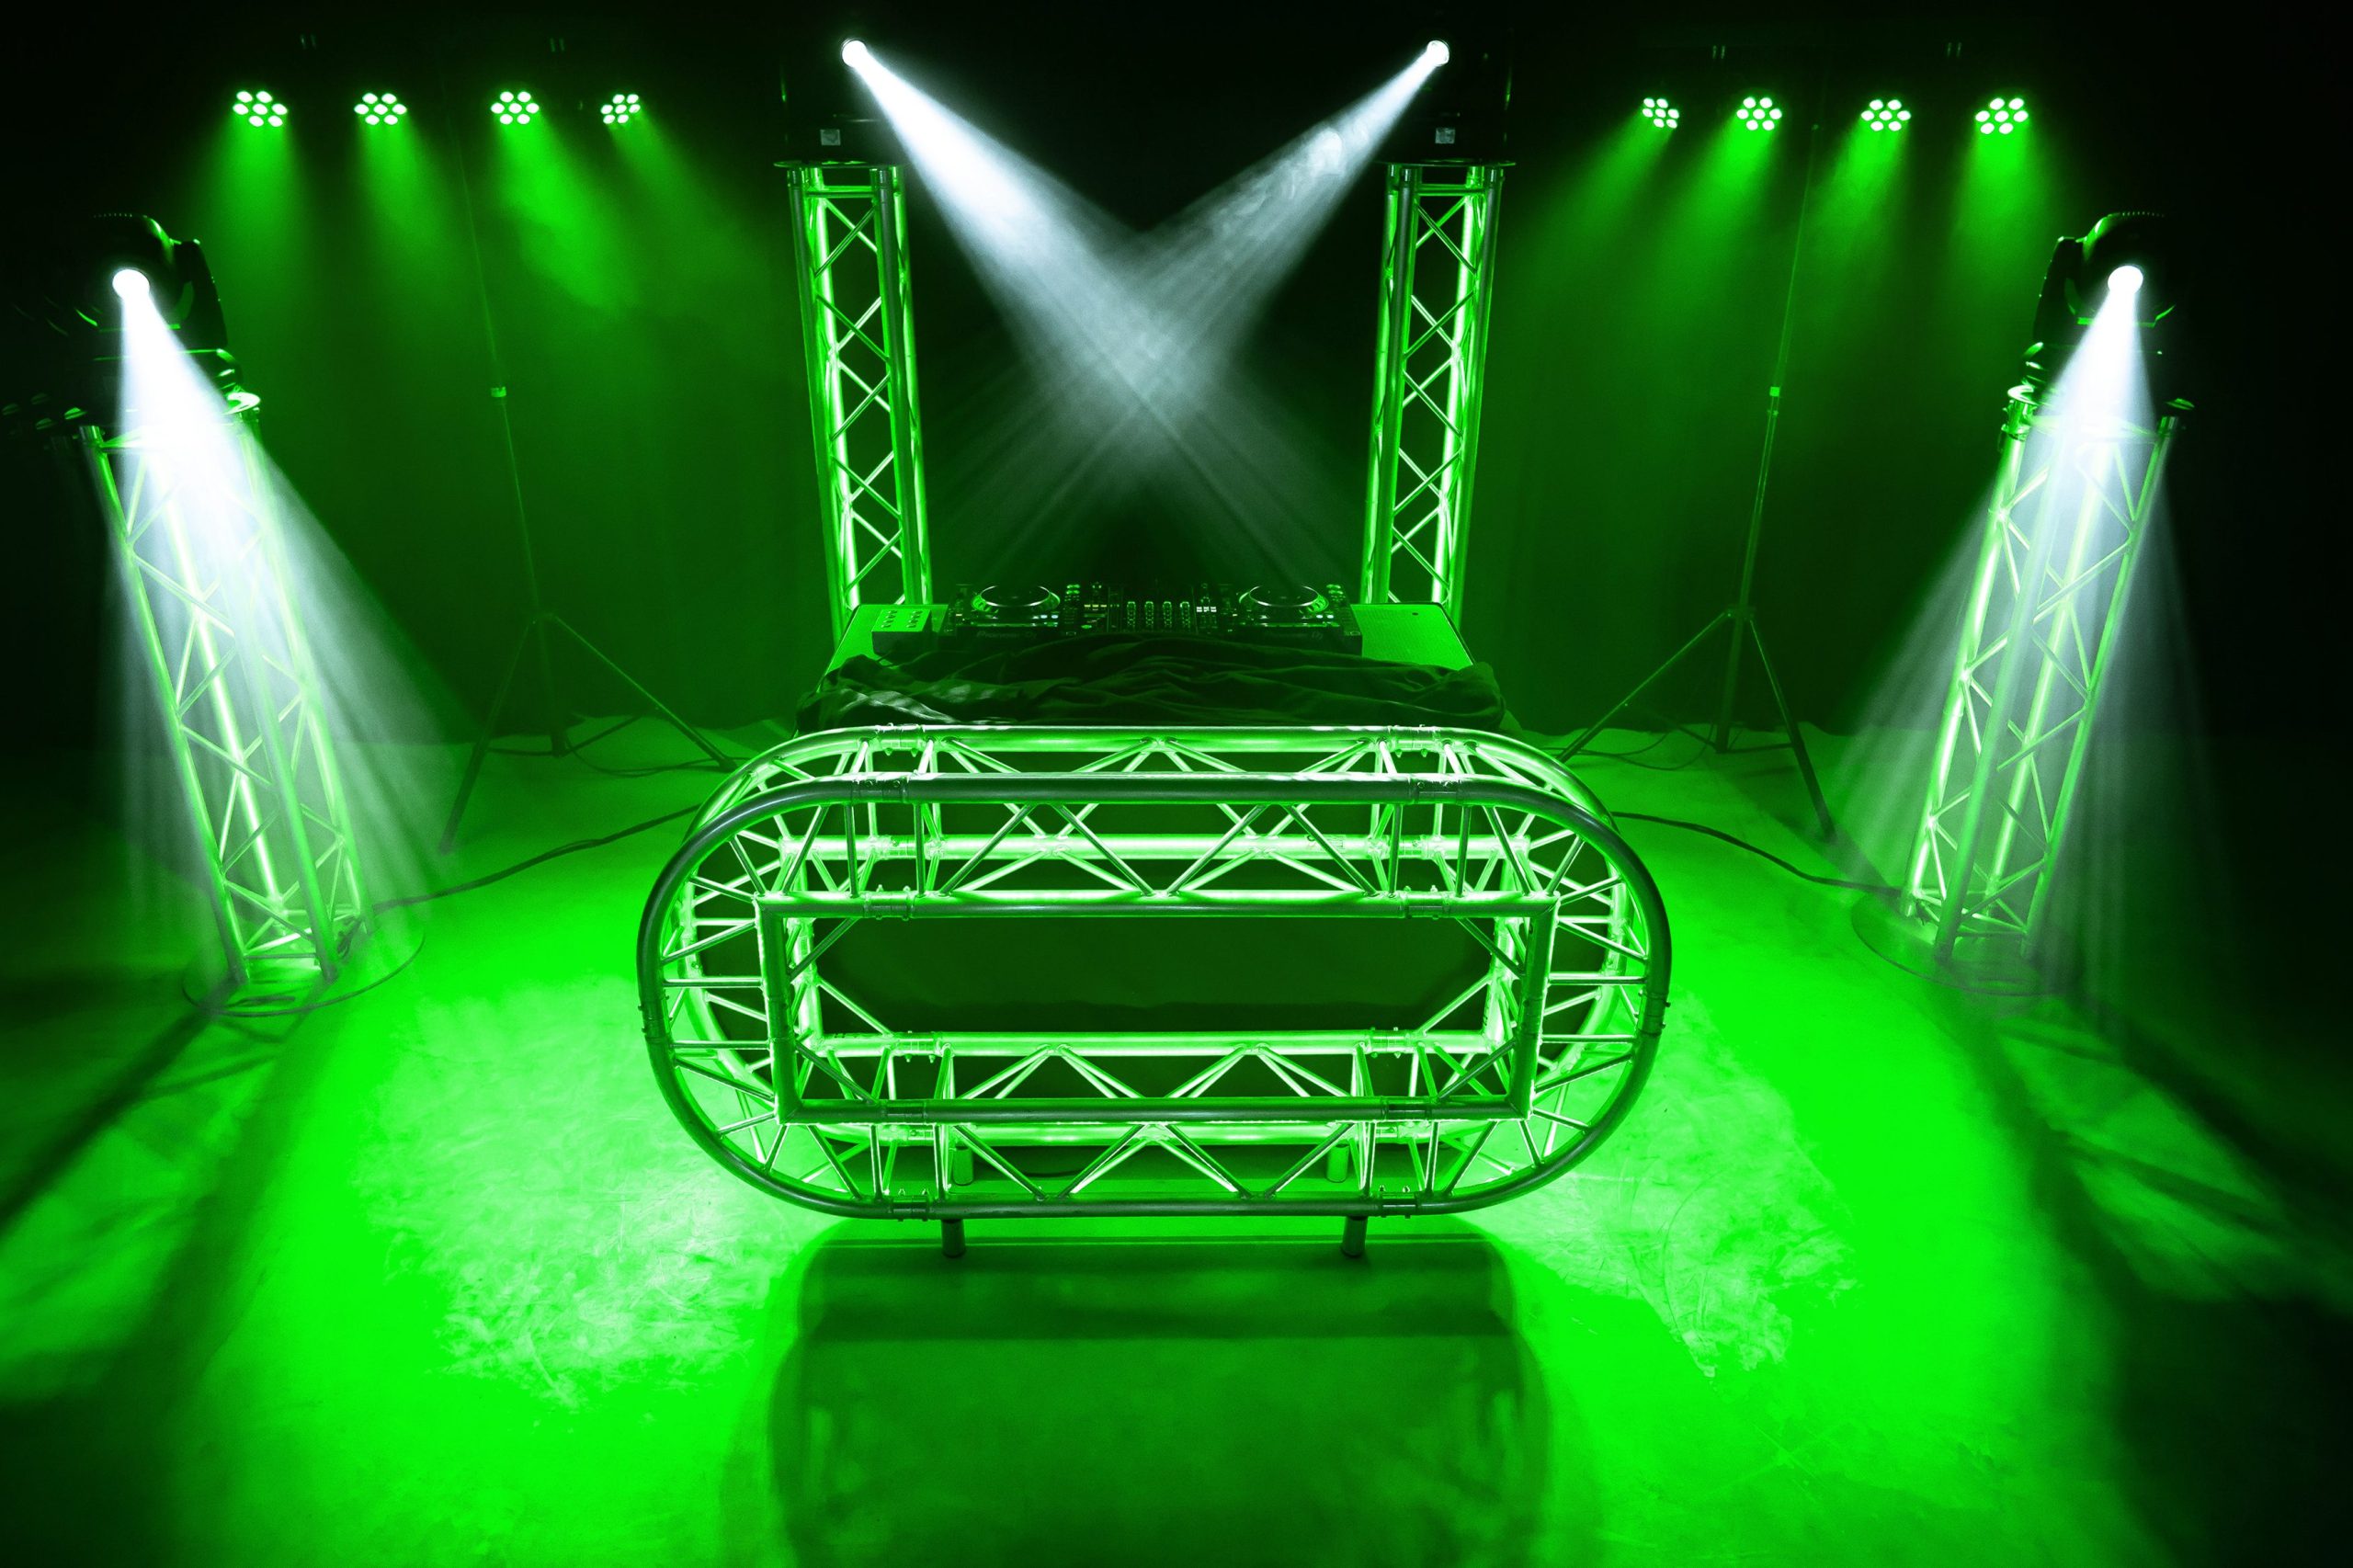 DJ Show Festival in de kleur groen